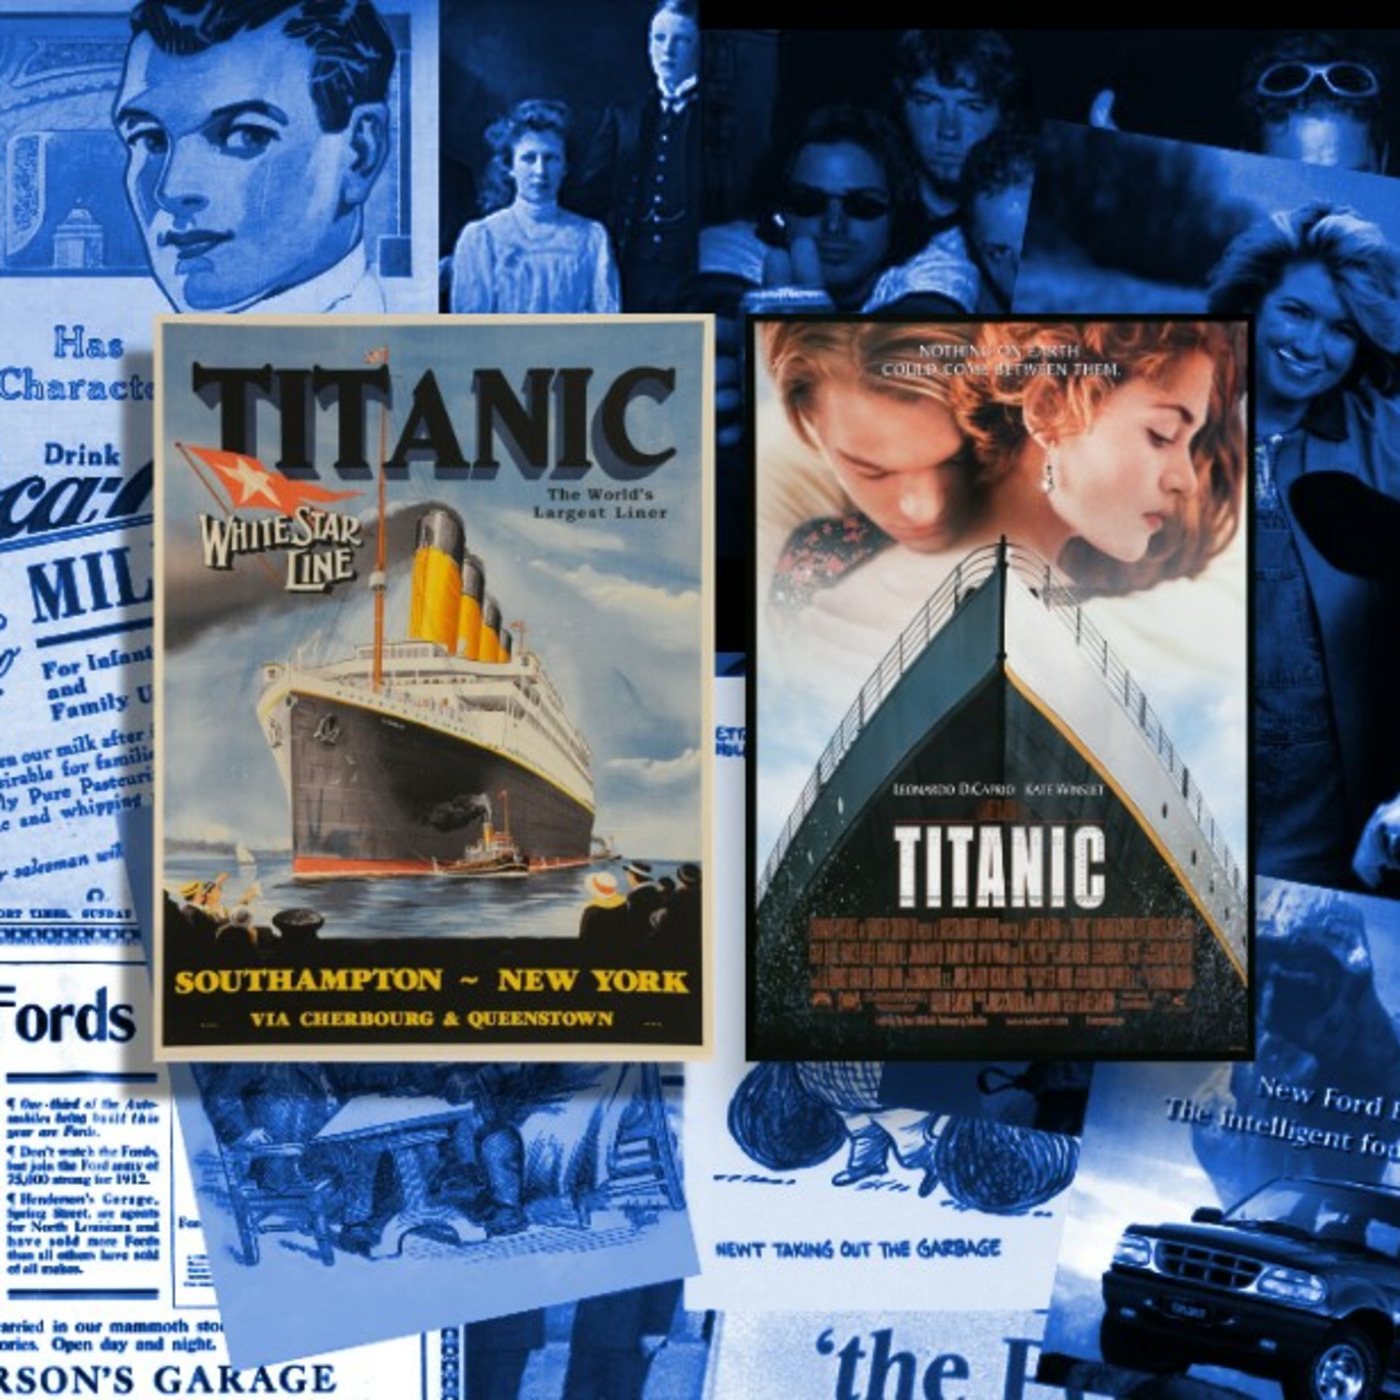 Episode 28: RMS Titanic & ”Titanic” (1997)